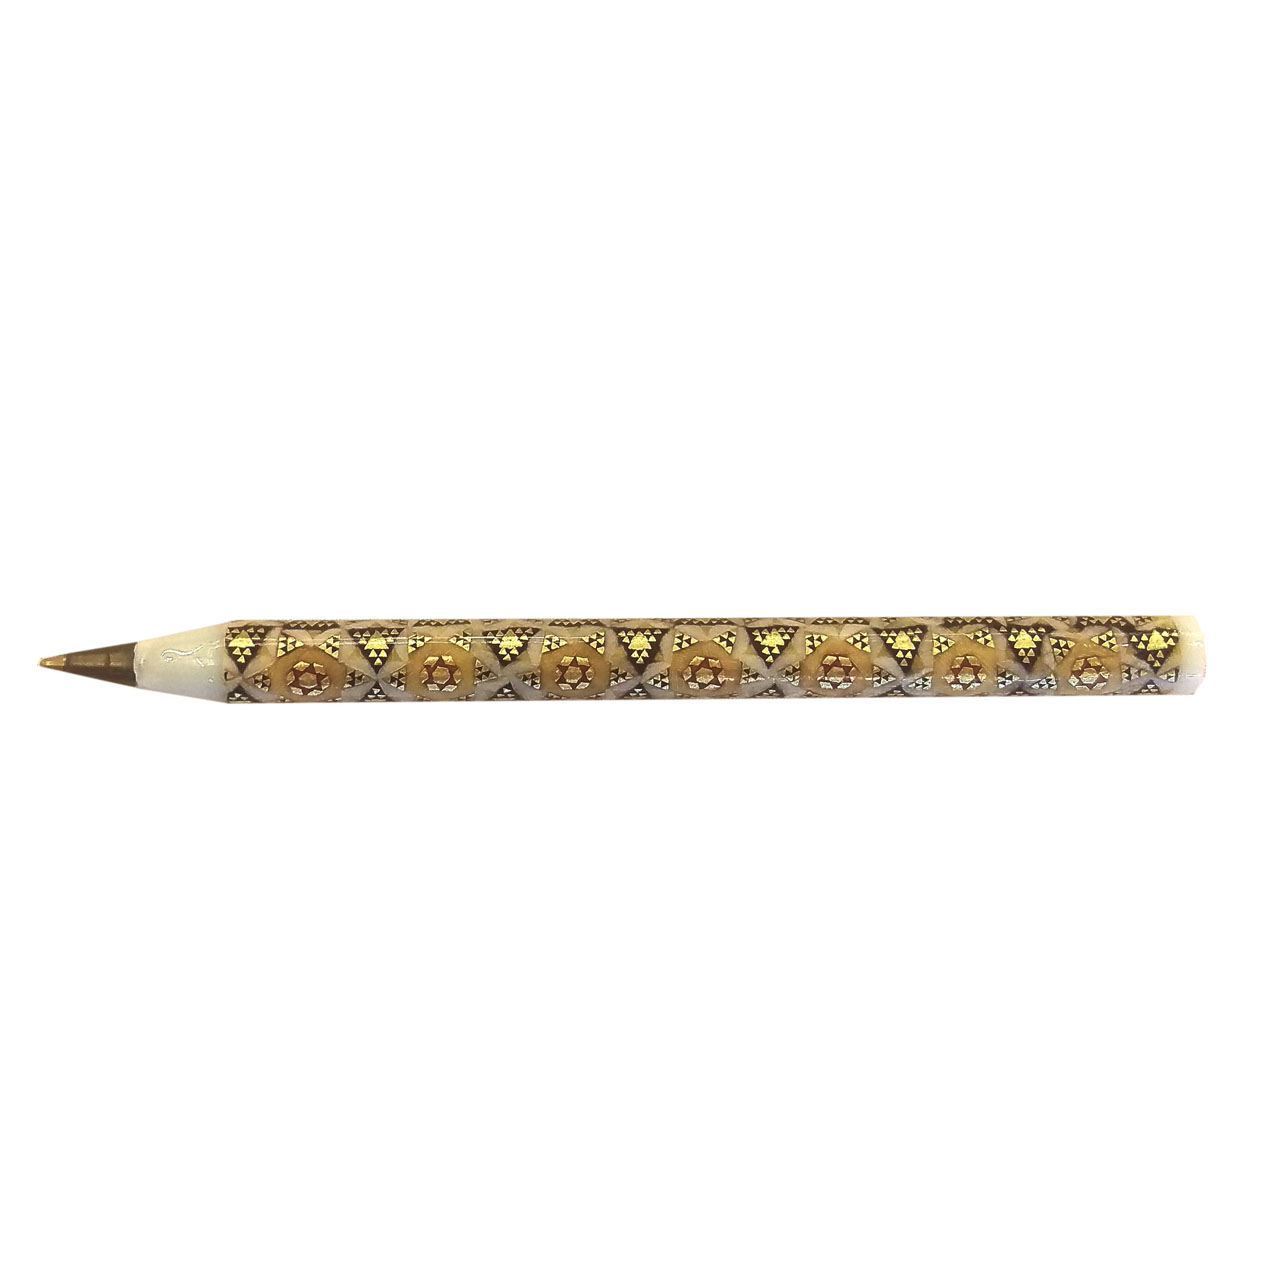 خودکار خاتم لوح هنر کد 1121